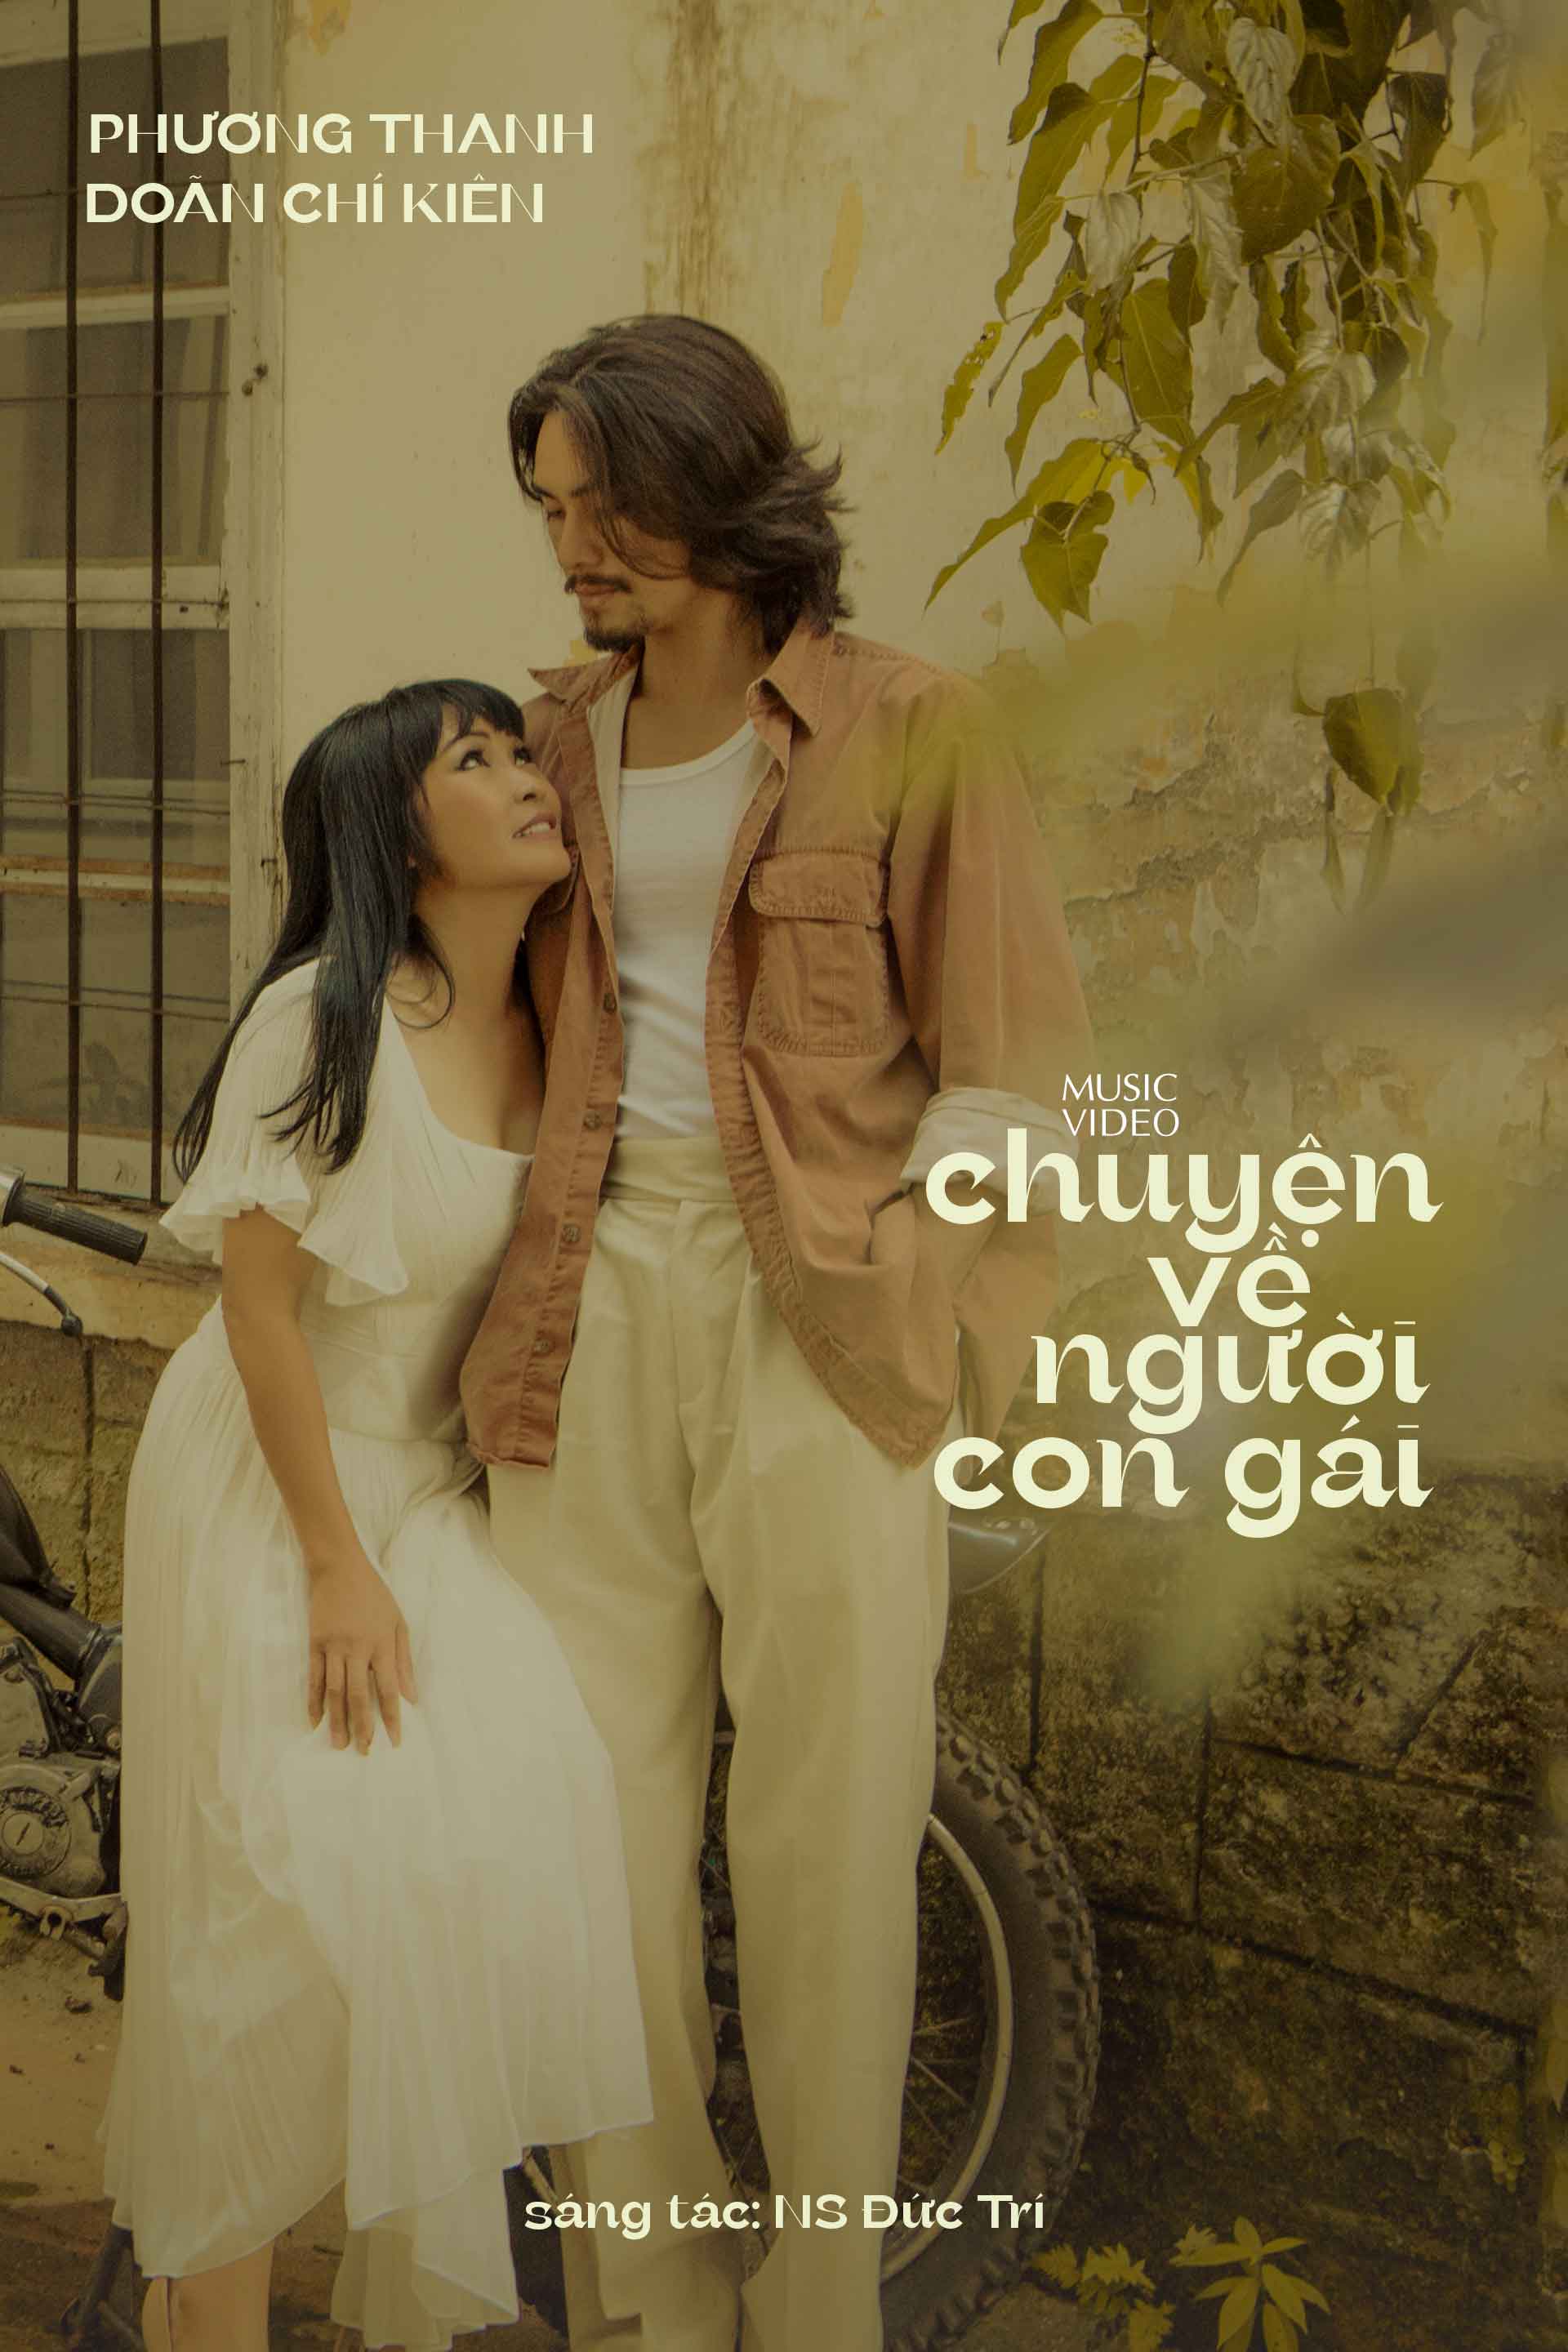 Poster MV "Chuyện người con gái".